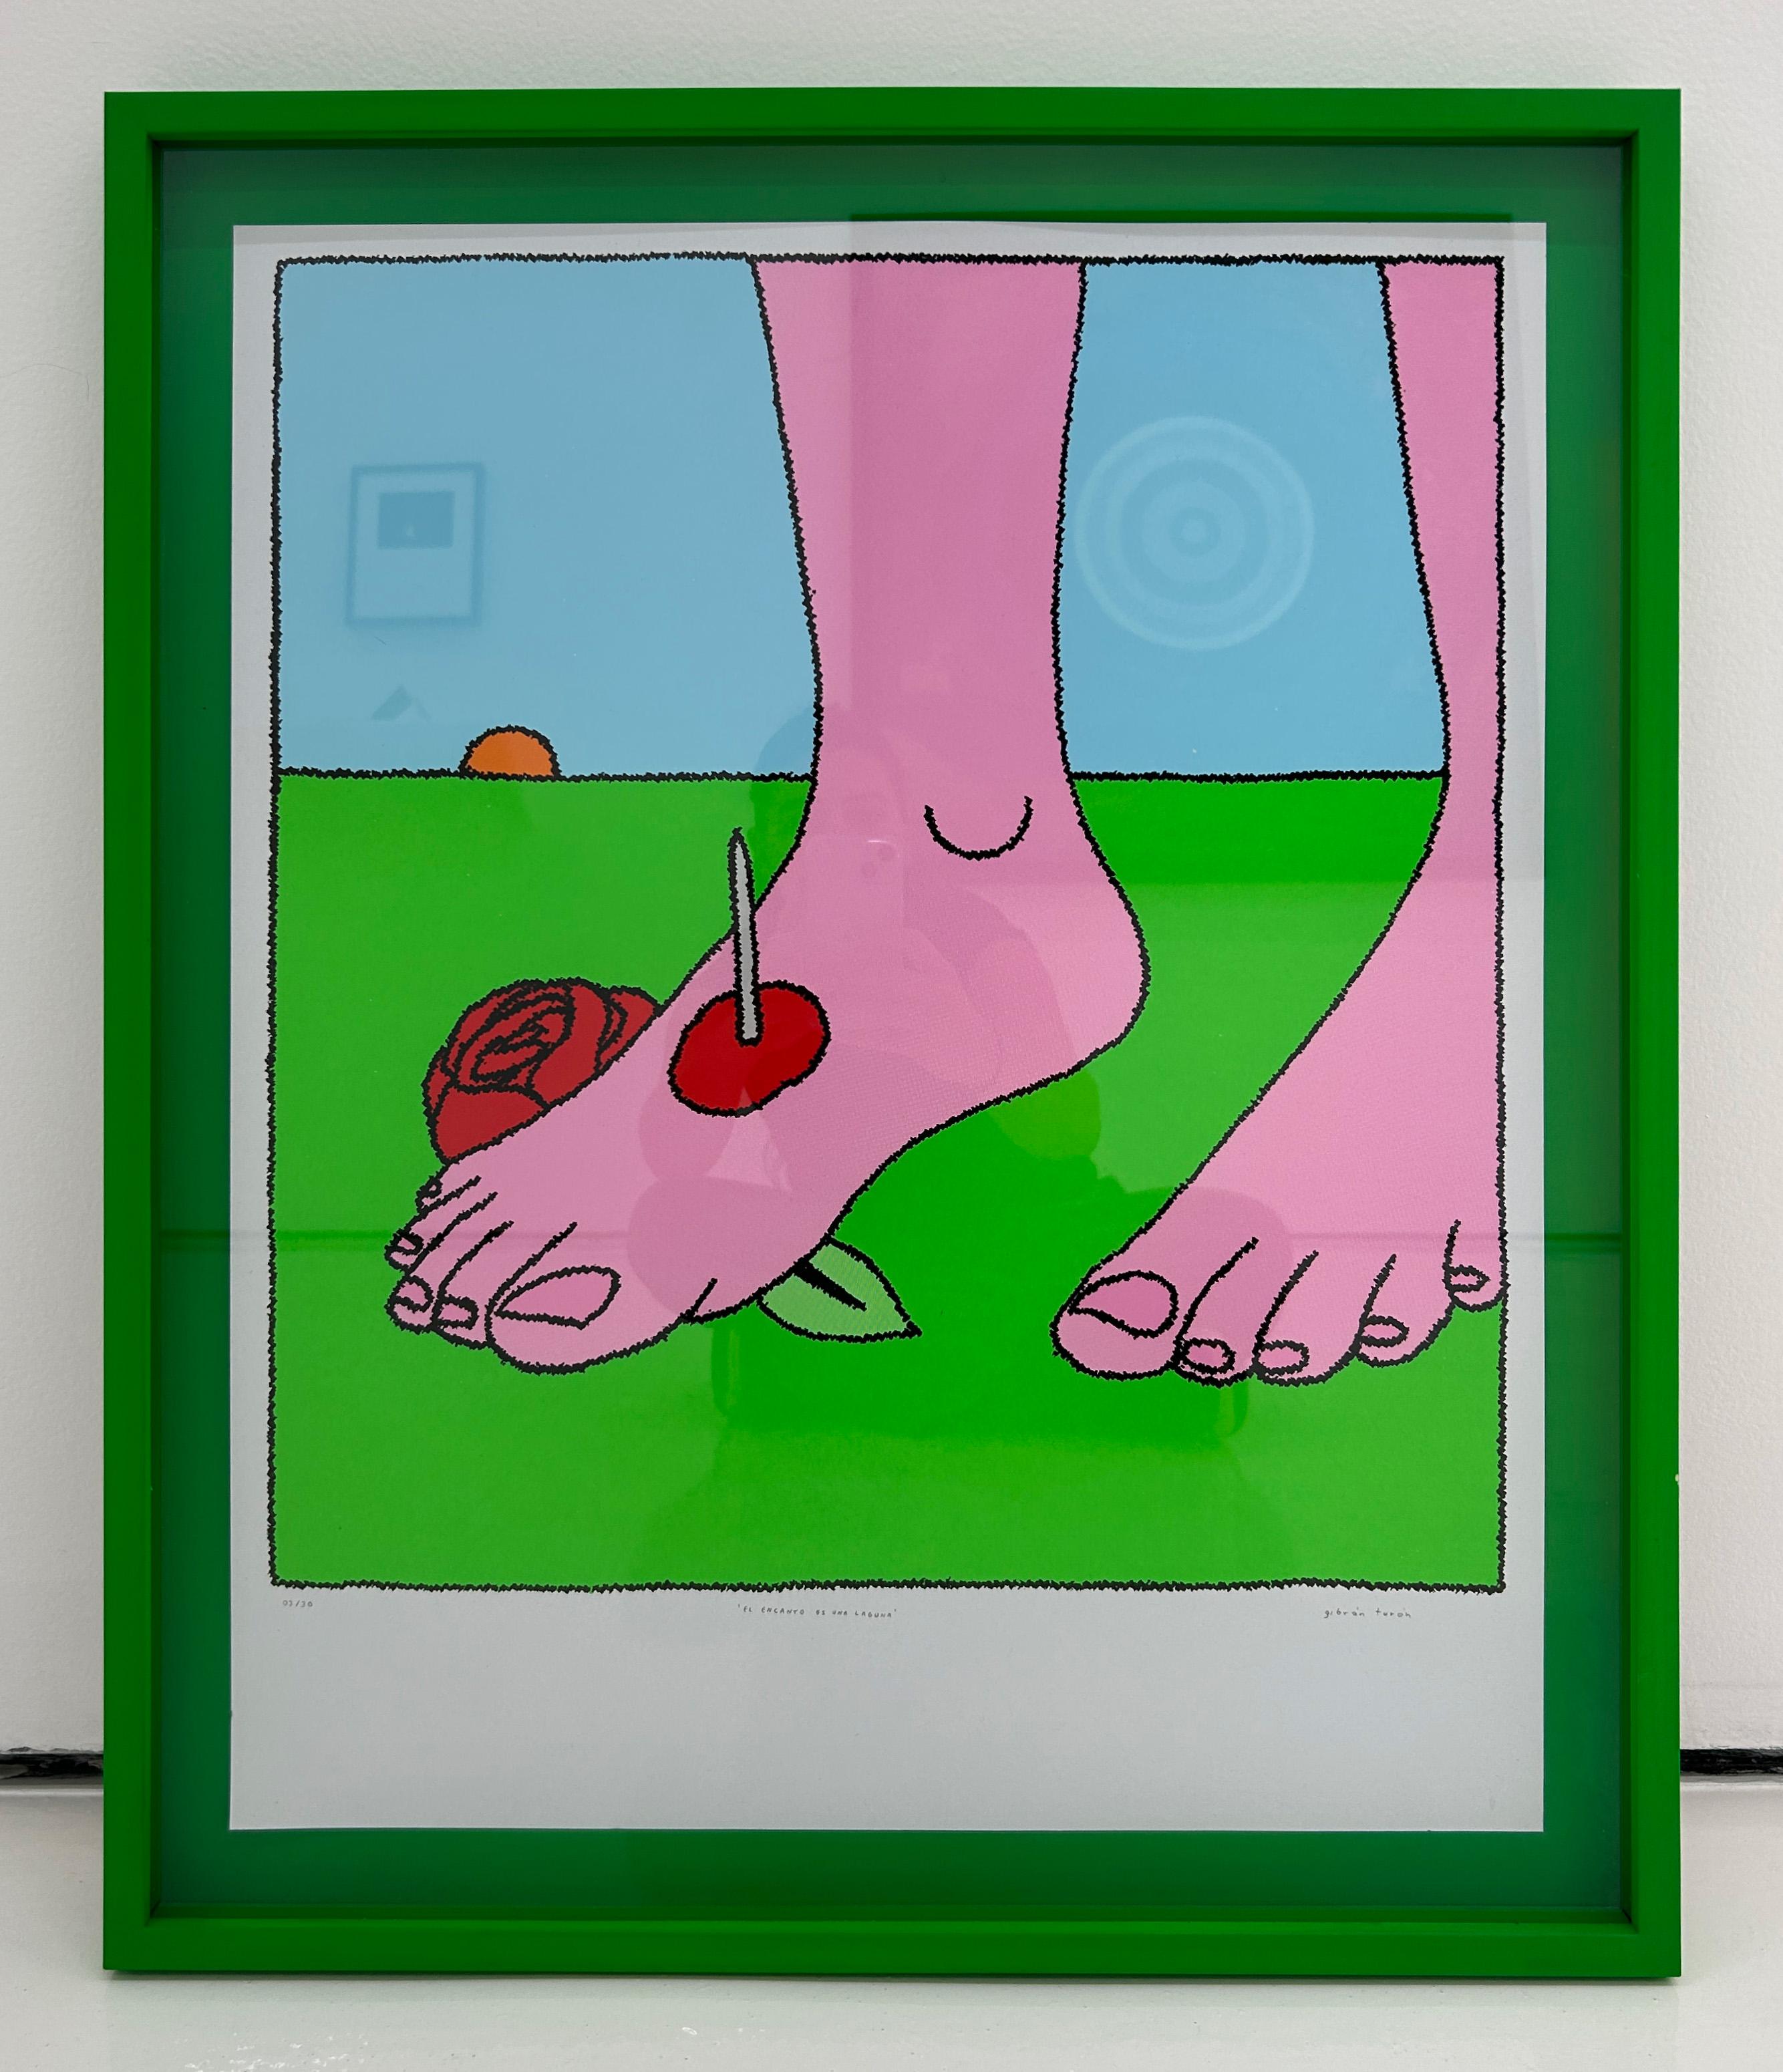 El encanto es una laguna - Pop Art Print by Gibrán Turón